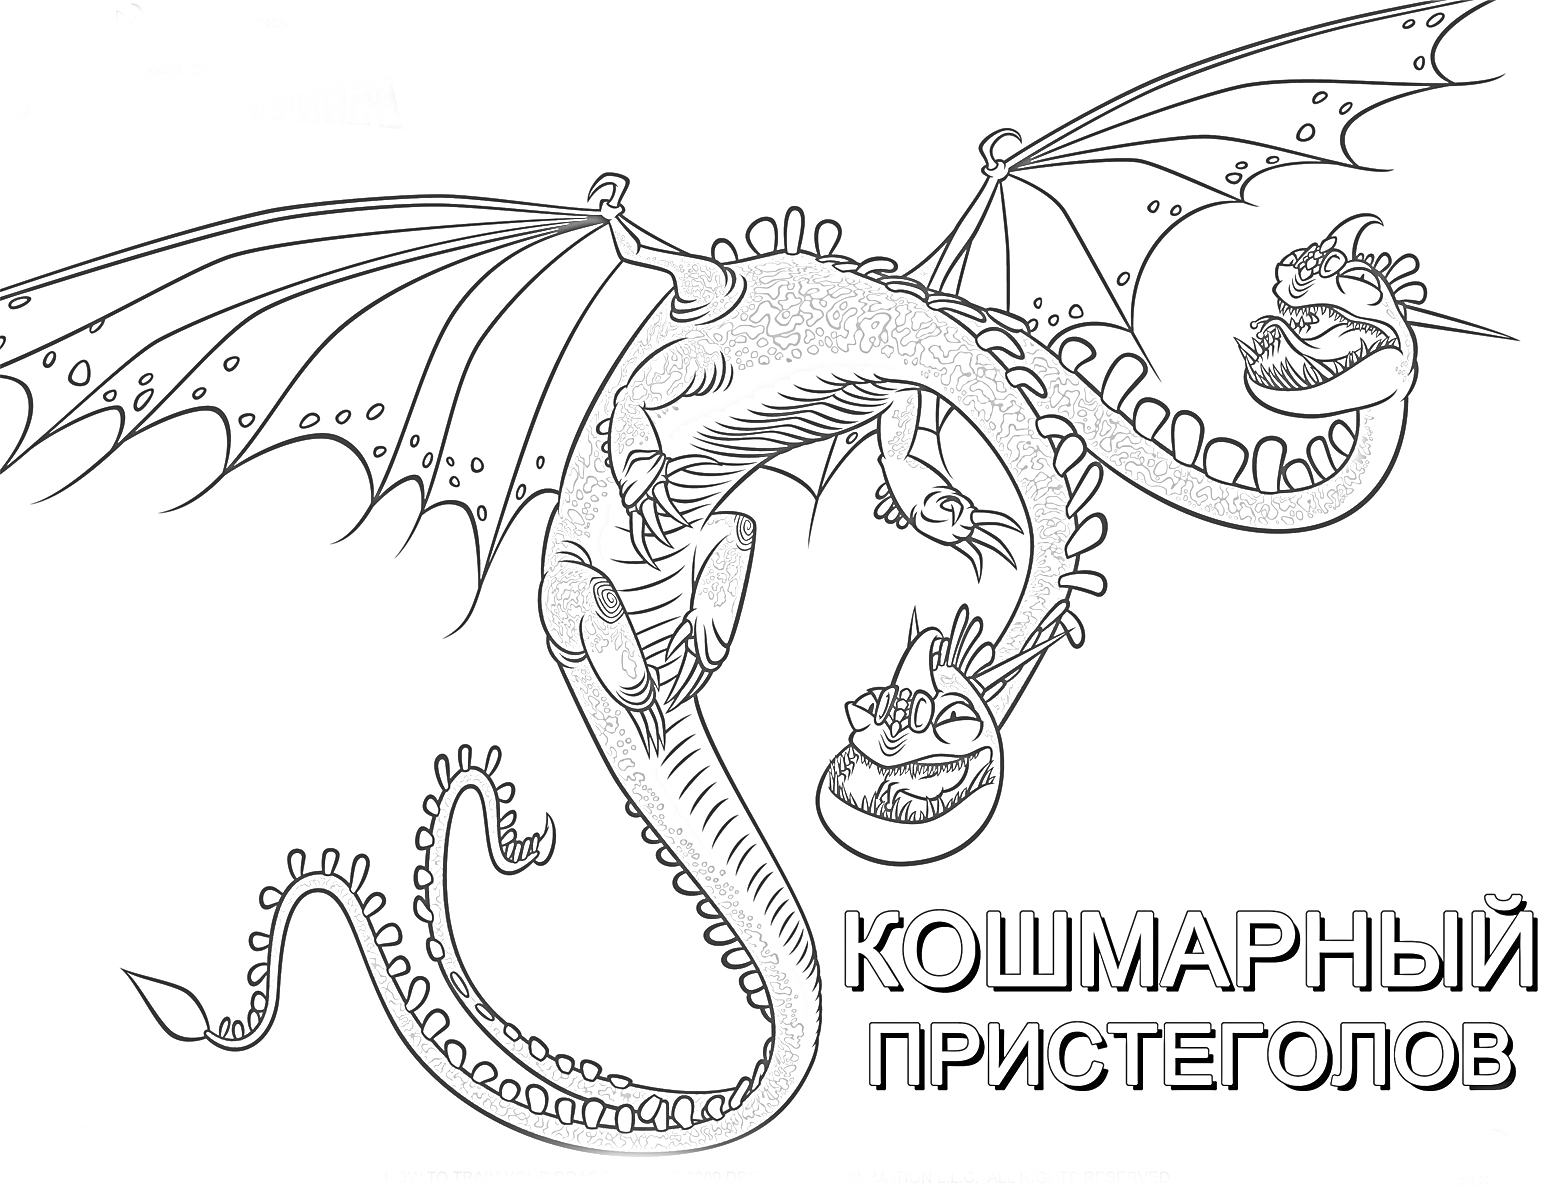 Раскраска Кошмарный Пристеголов, дракон с двумя головами, раскрытые крылья, вращение в воздухе